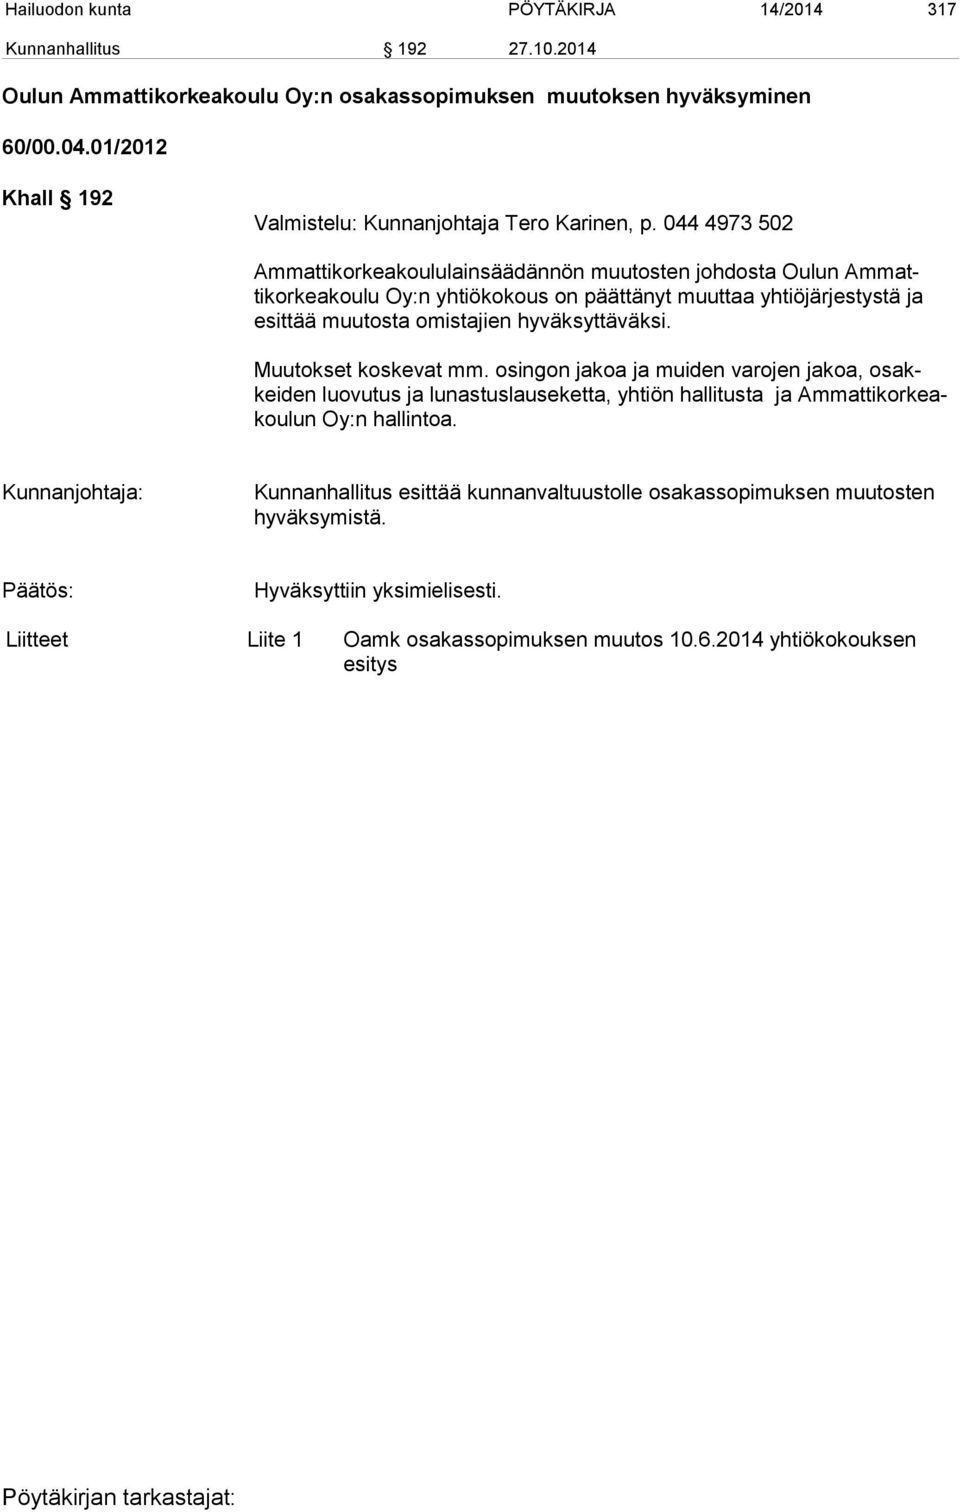 044 4973 502 Ammattikorkeakoululainsäädännön muutosten johdosta Oulun Ammattikorkeakoulu Oy:n yhtiökokous on päättänyt muuttaa yhtiöjärjestystä ja esittää muutosta omistajien hyväksyttäväksi.